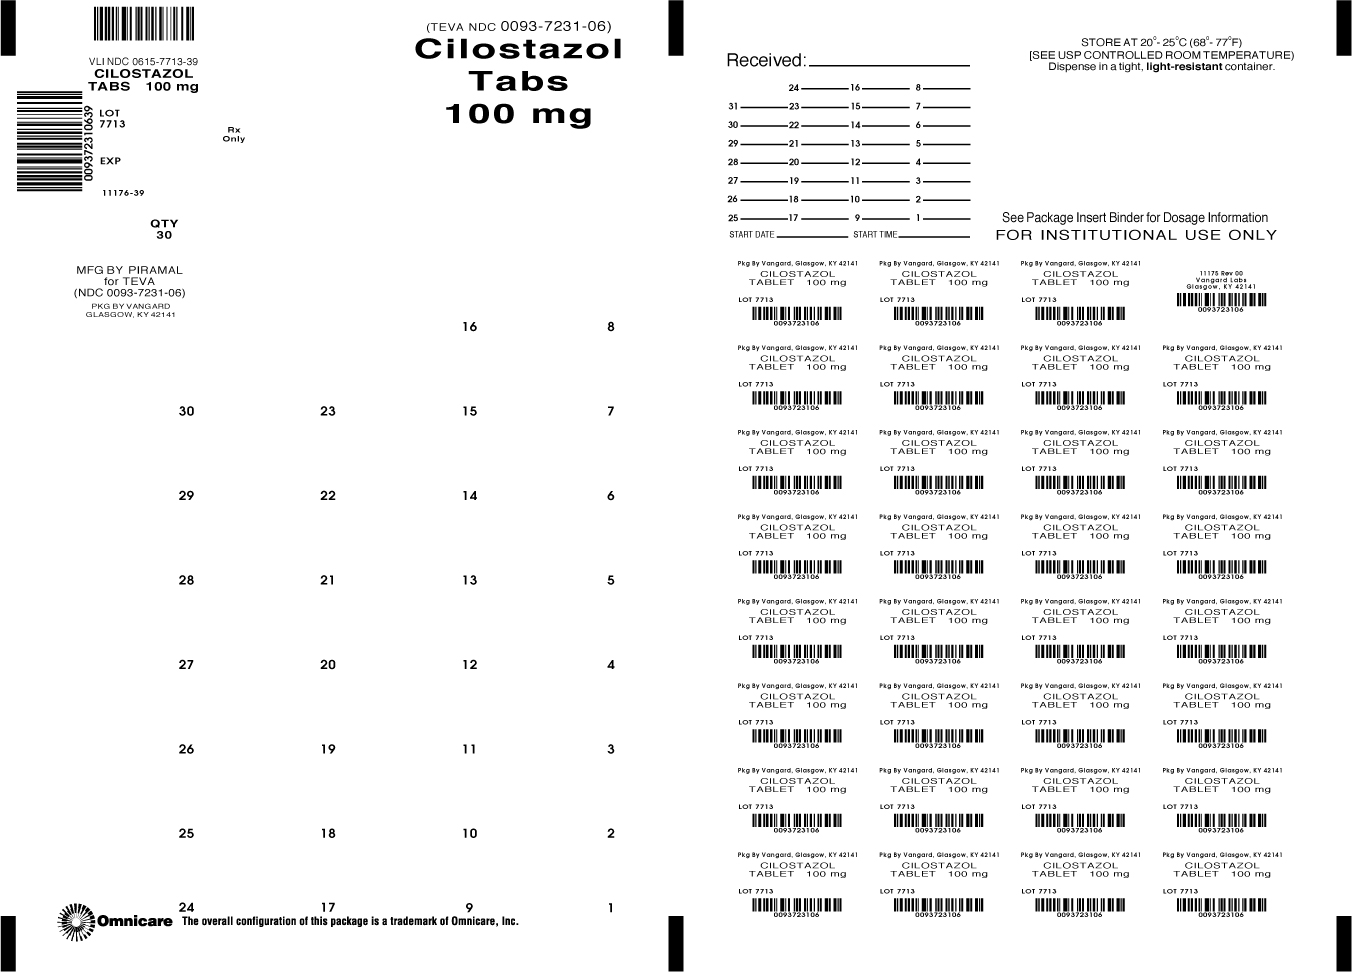 Principal Display Panel-Cilostazol Tabs 100mg